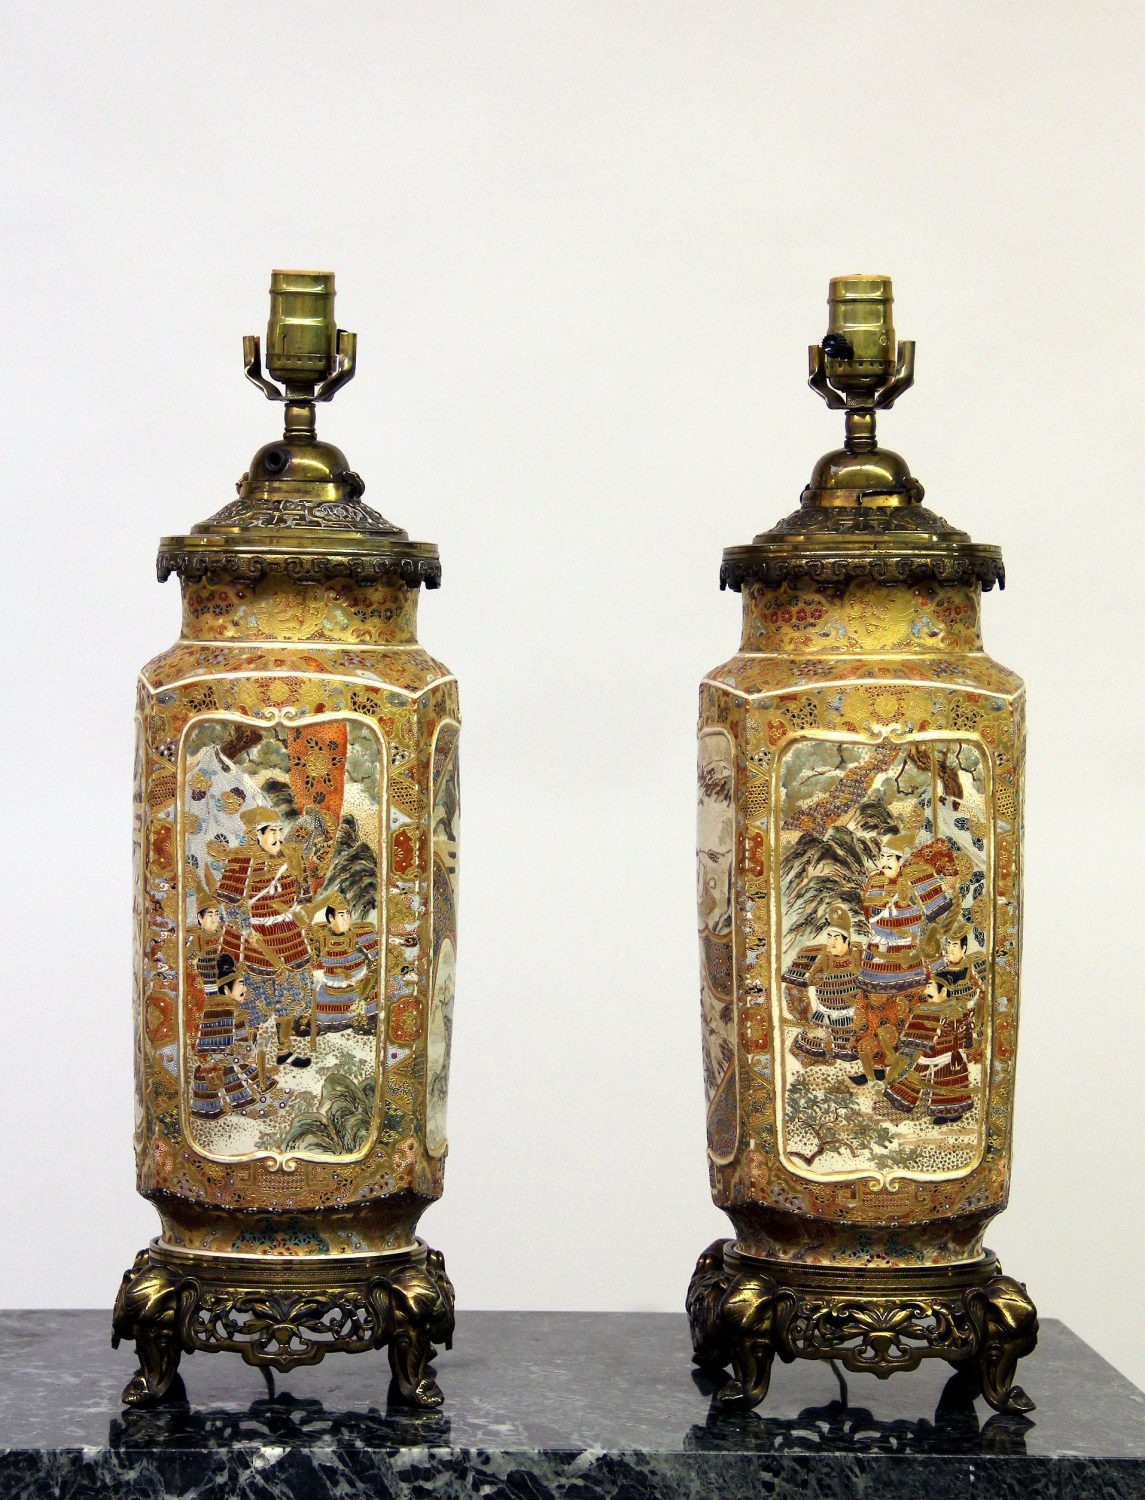 Antique Porcelain Lamps & Centerpieces